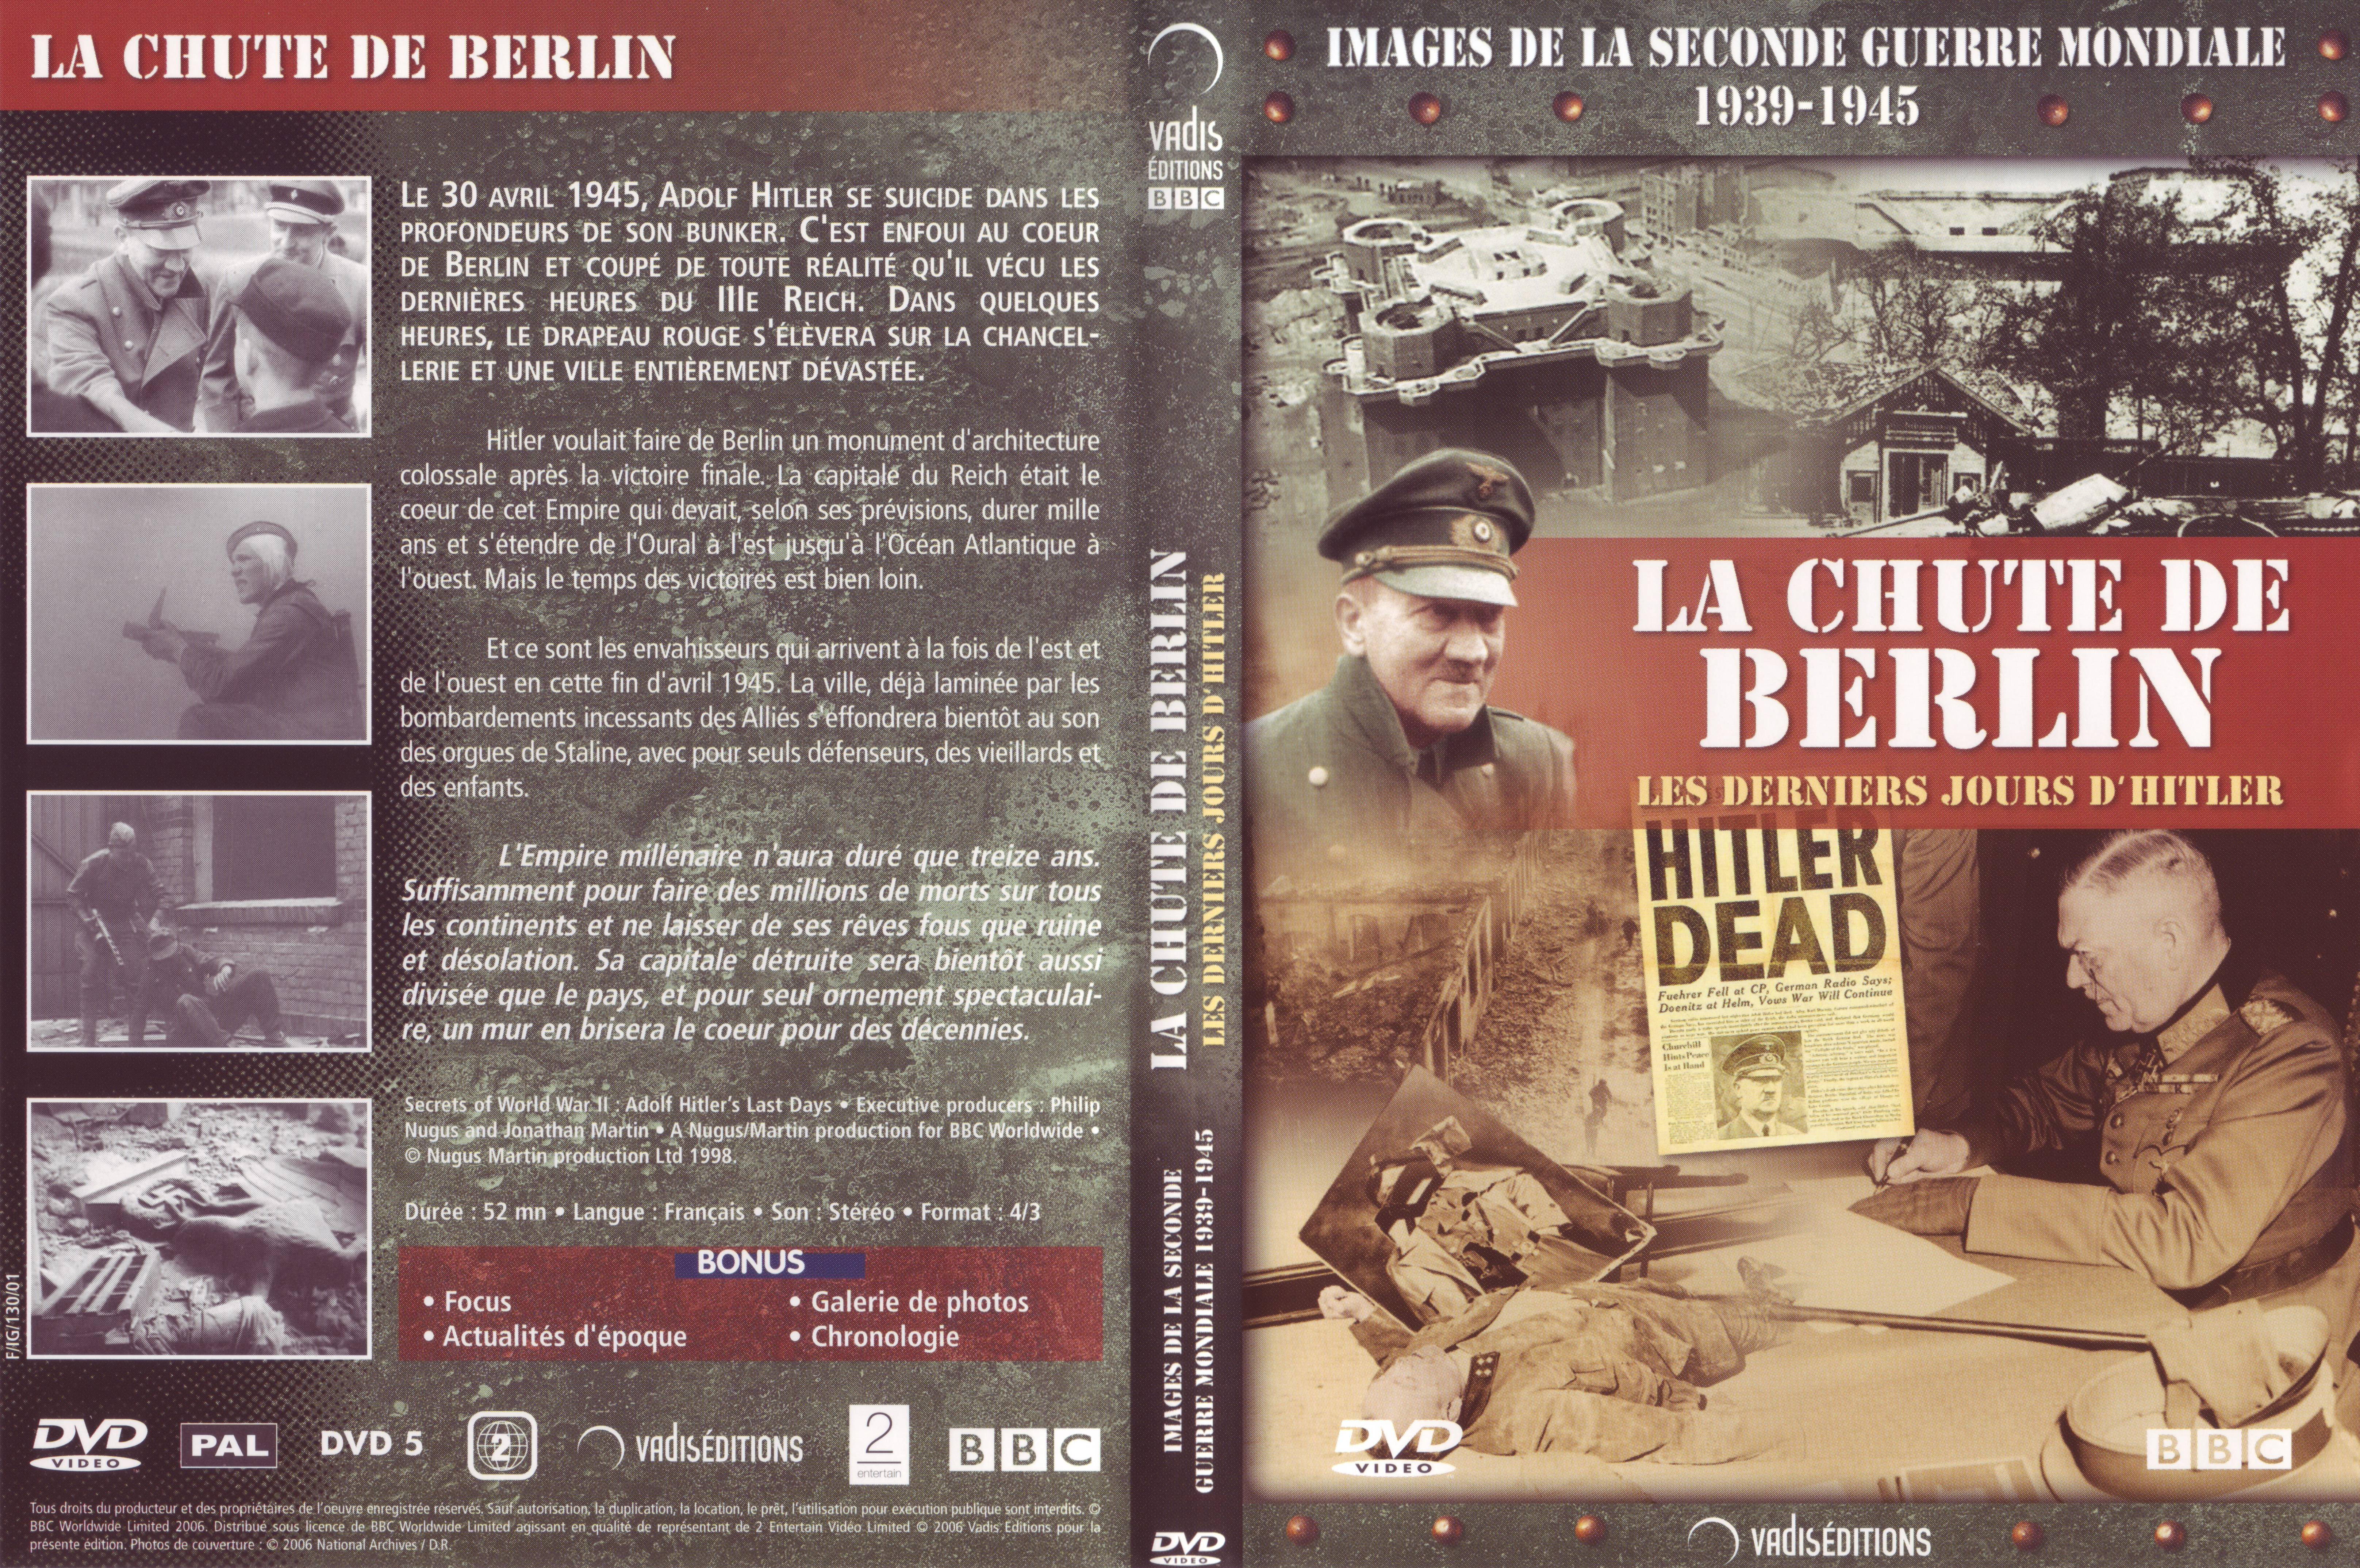 Jaquette DVD Images de la seconde guerre mondiale - La chute de Berlin